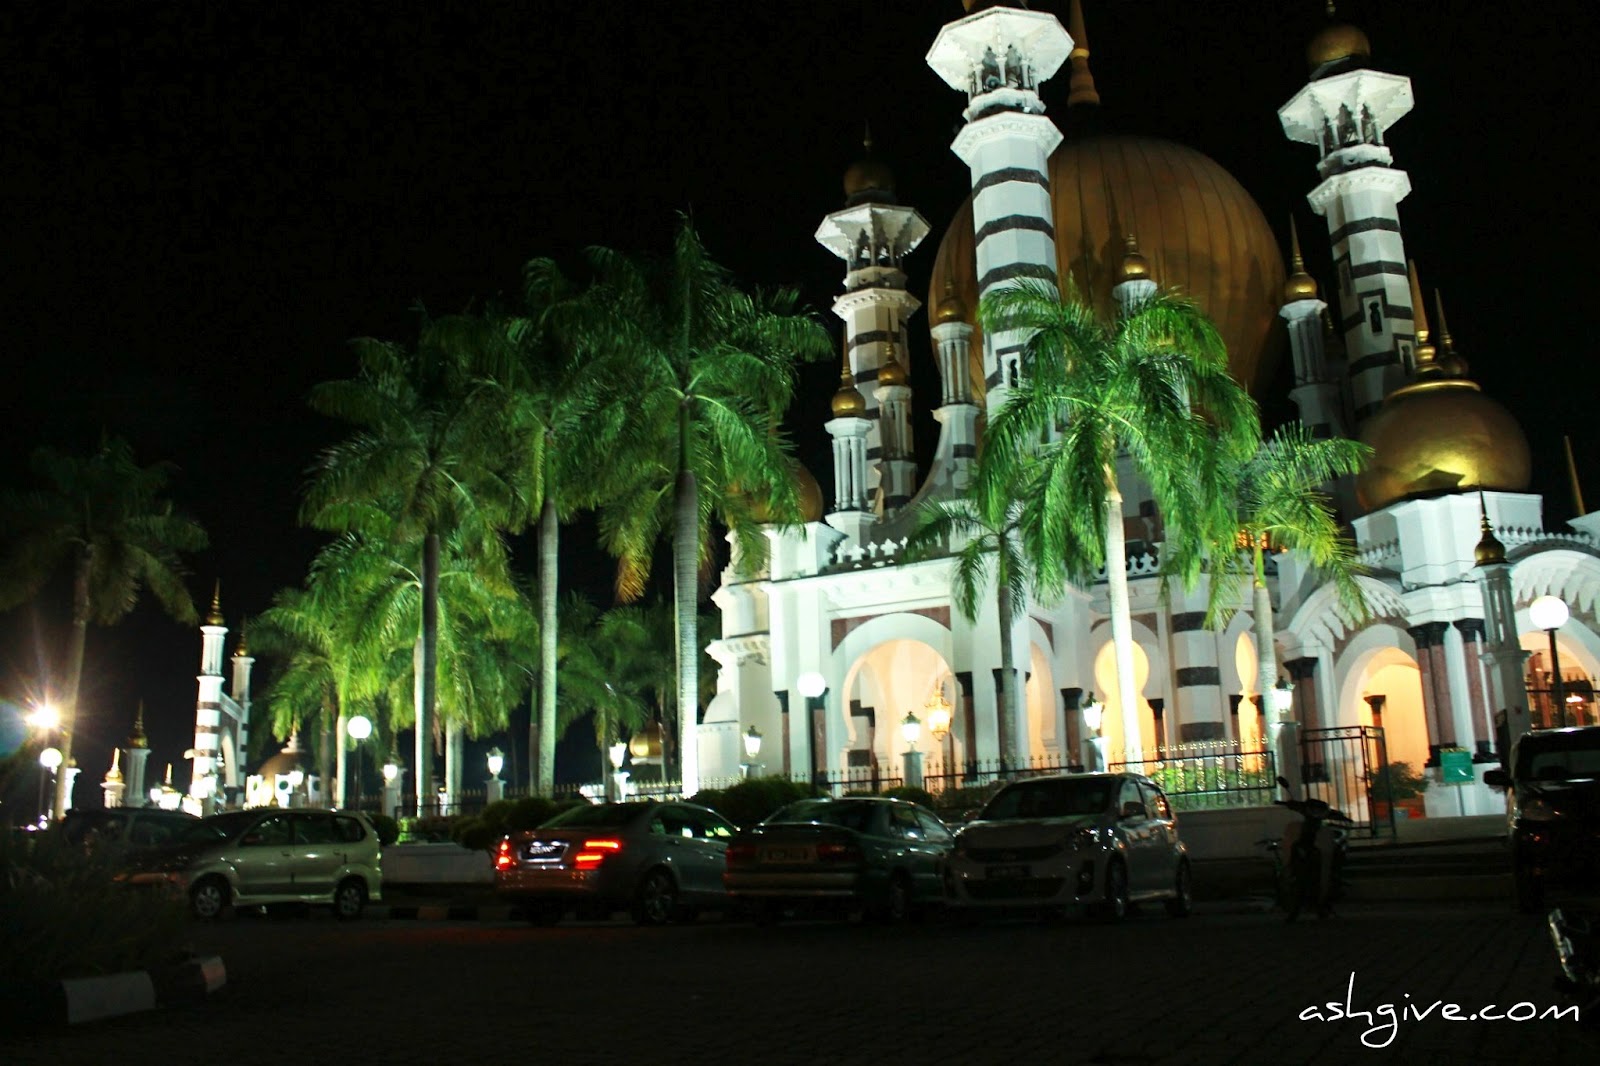 Ashgive.com: Pemandangan Malam Sekitar Bandar Kuala Kangsar